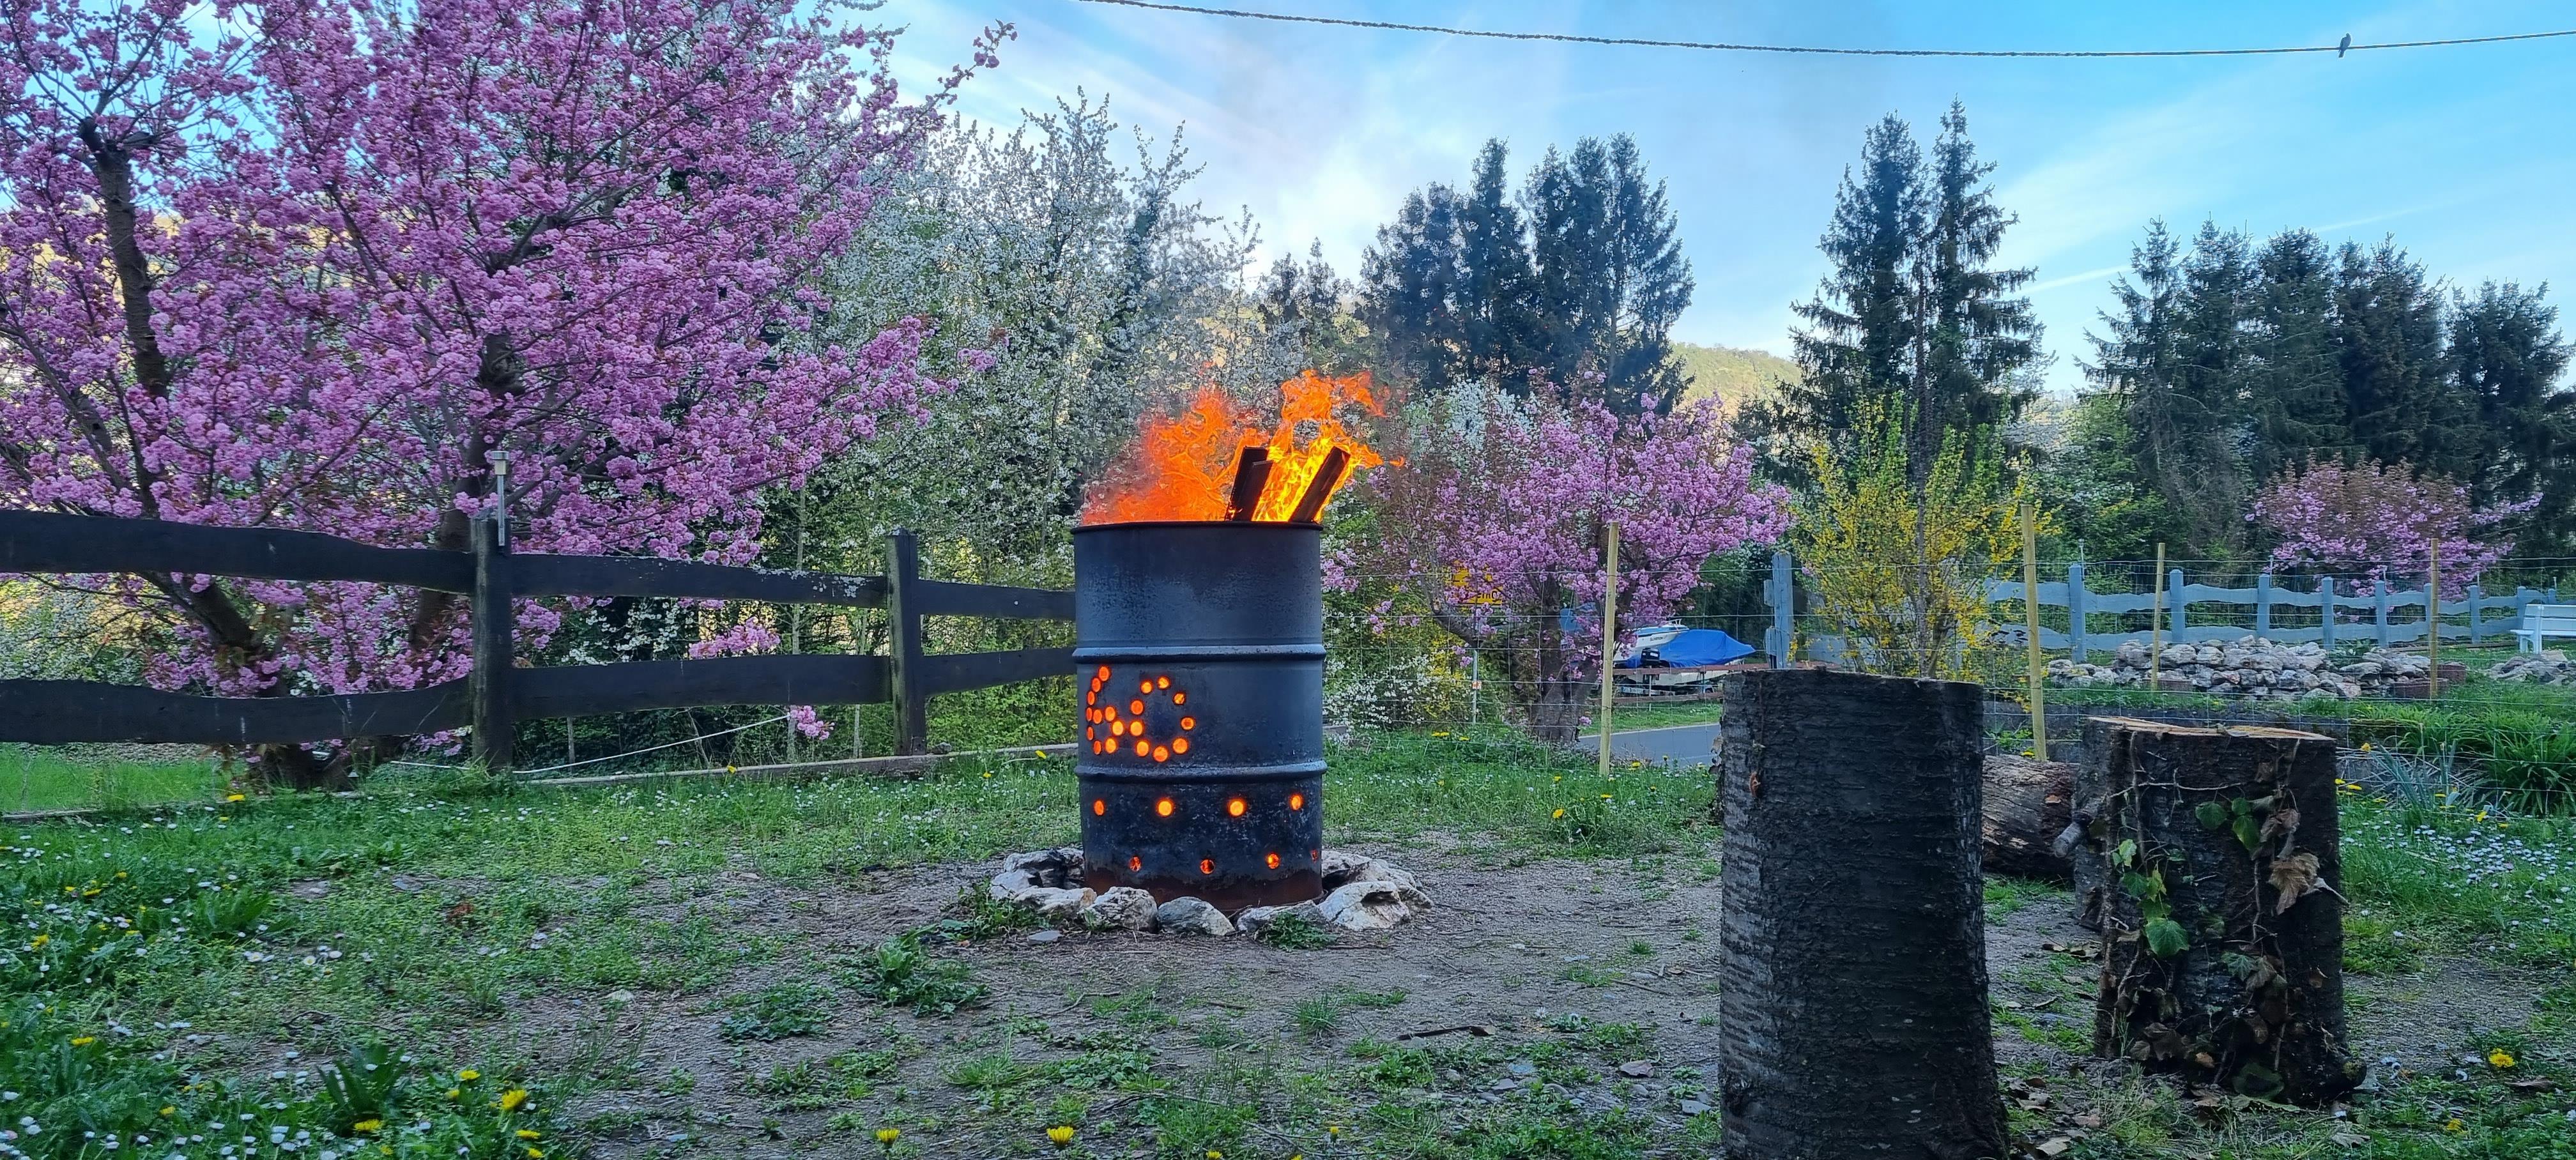 fire barrel